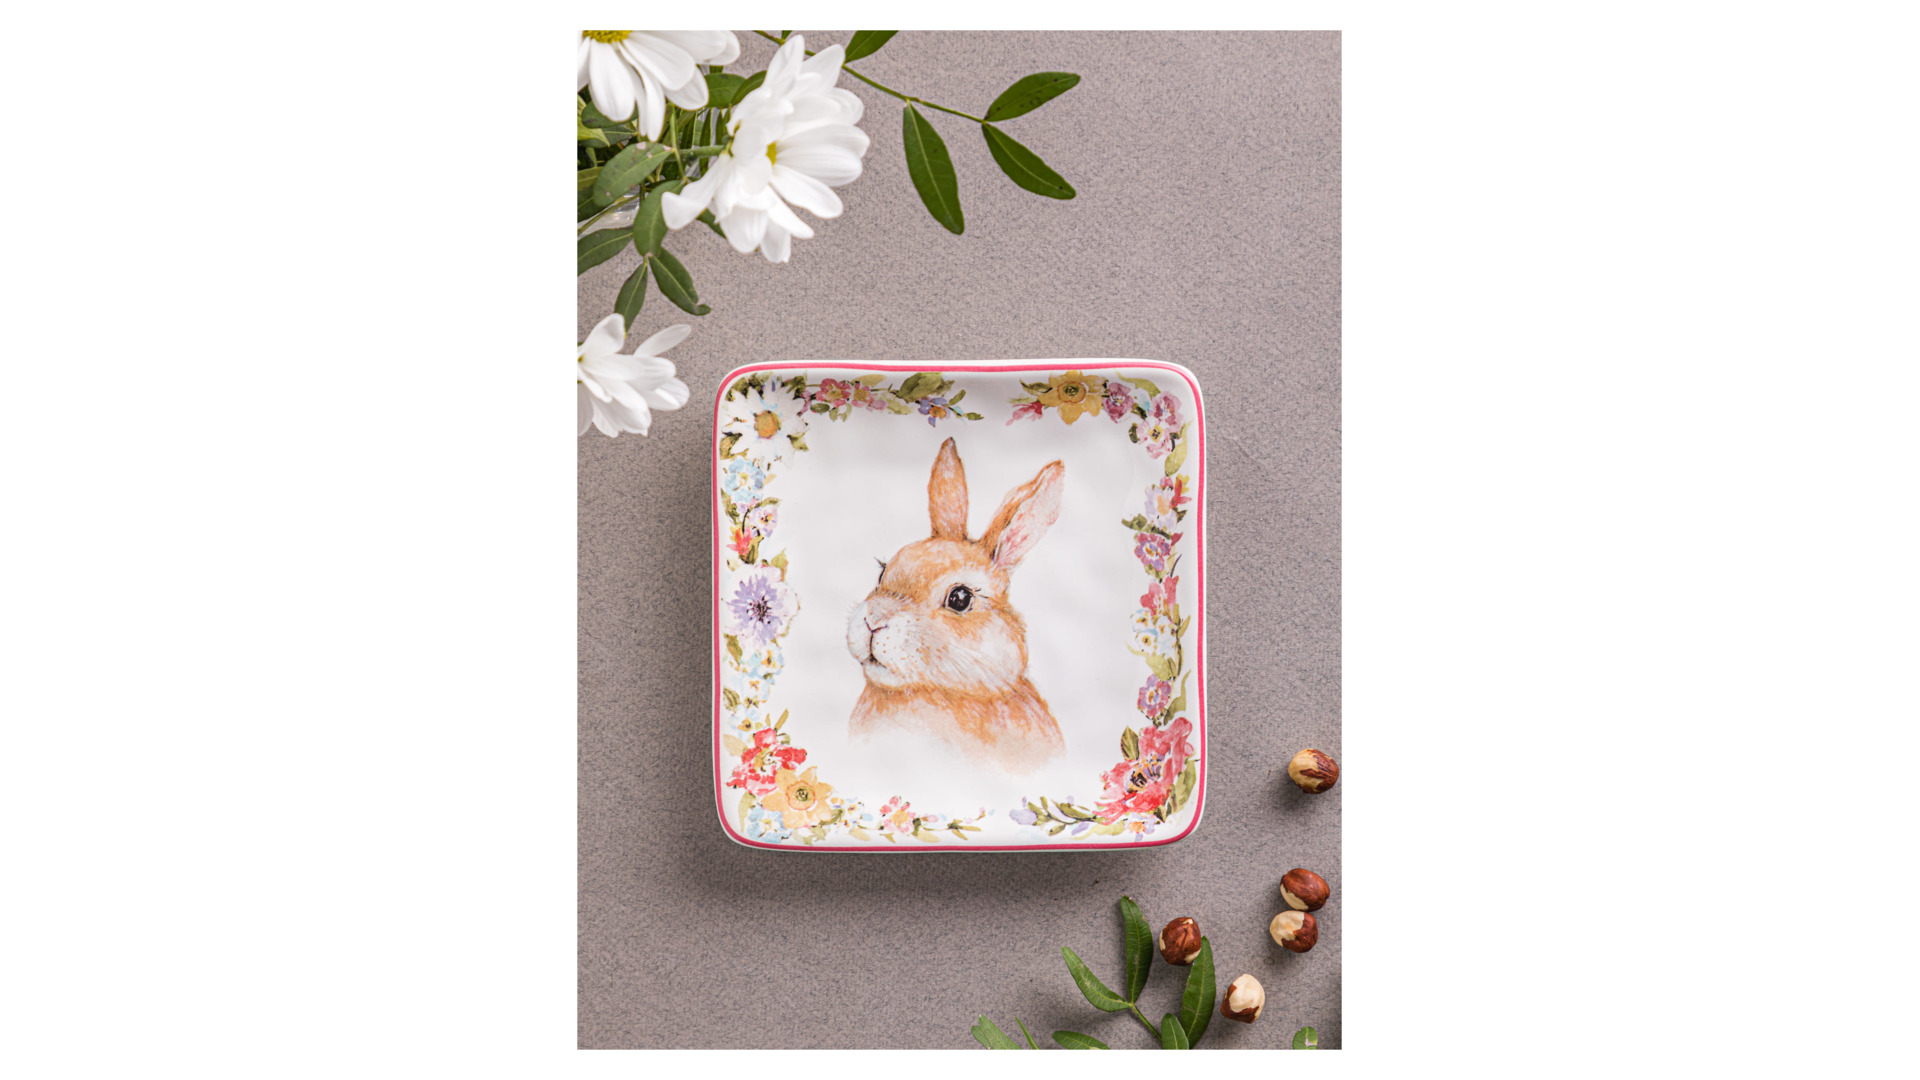 Тарелка пирожковая квадратная Certified Int Весенний сад Кролик, взгляд налево 15 см, керамика